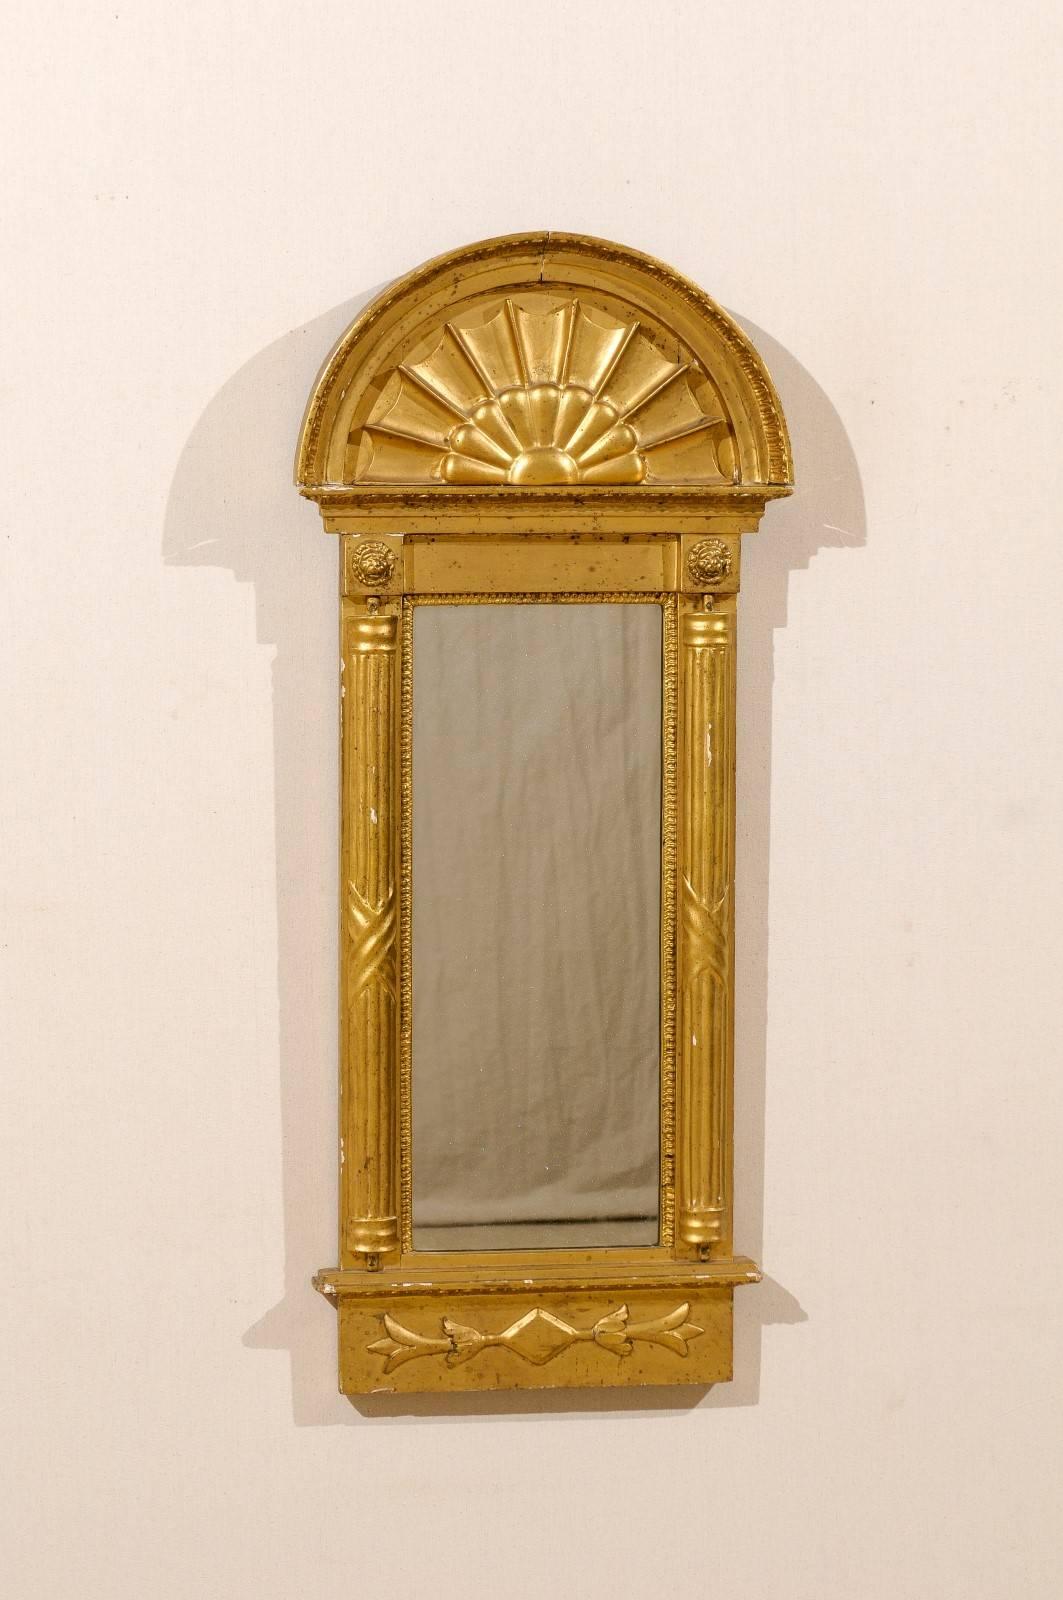 Miroir doré suédois du début du XIXe siècle, vers 1820. Ce miroir présente une crête arquée et des demi-colonnes cannelées. Il y a deux sculptures de lion au-dessus de chaque colonne. À l'intérieur de l'arc se trouve une décoration rappelant une